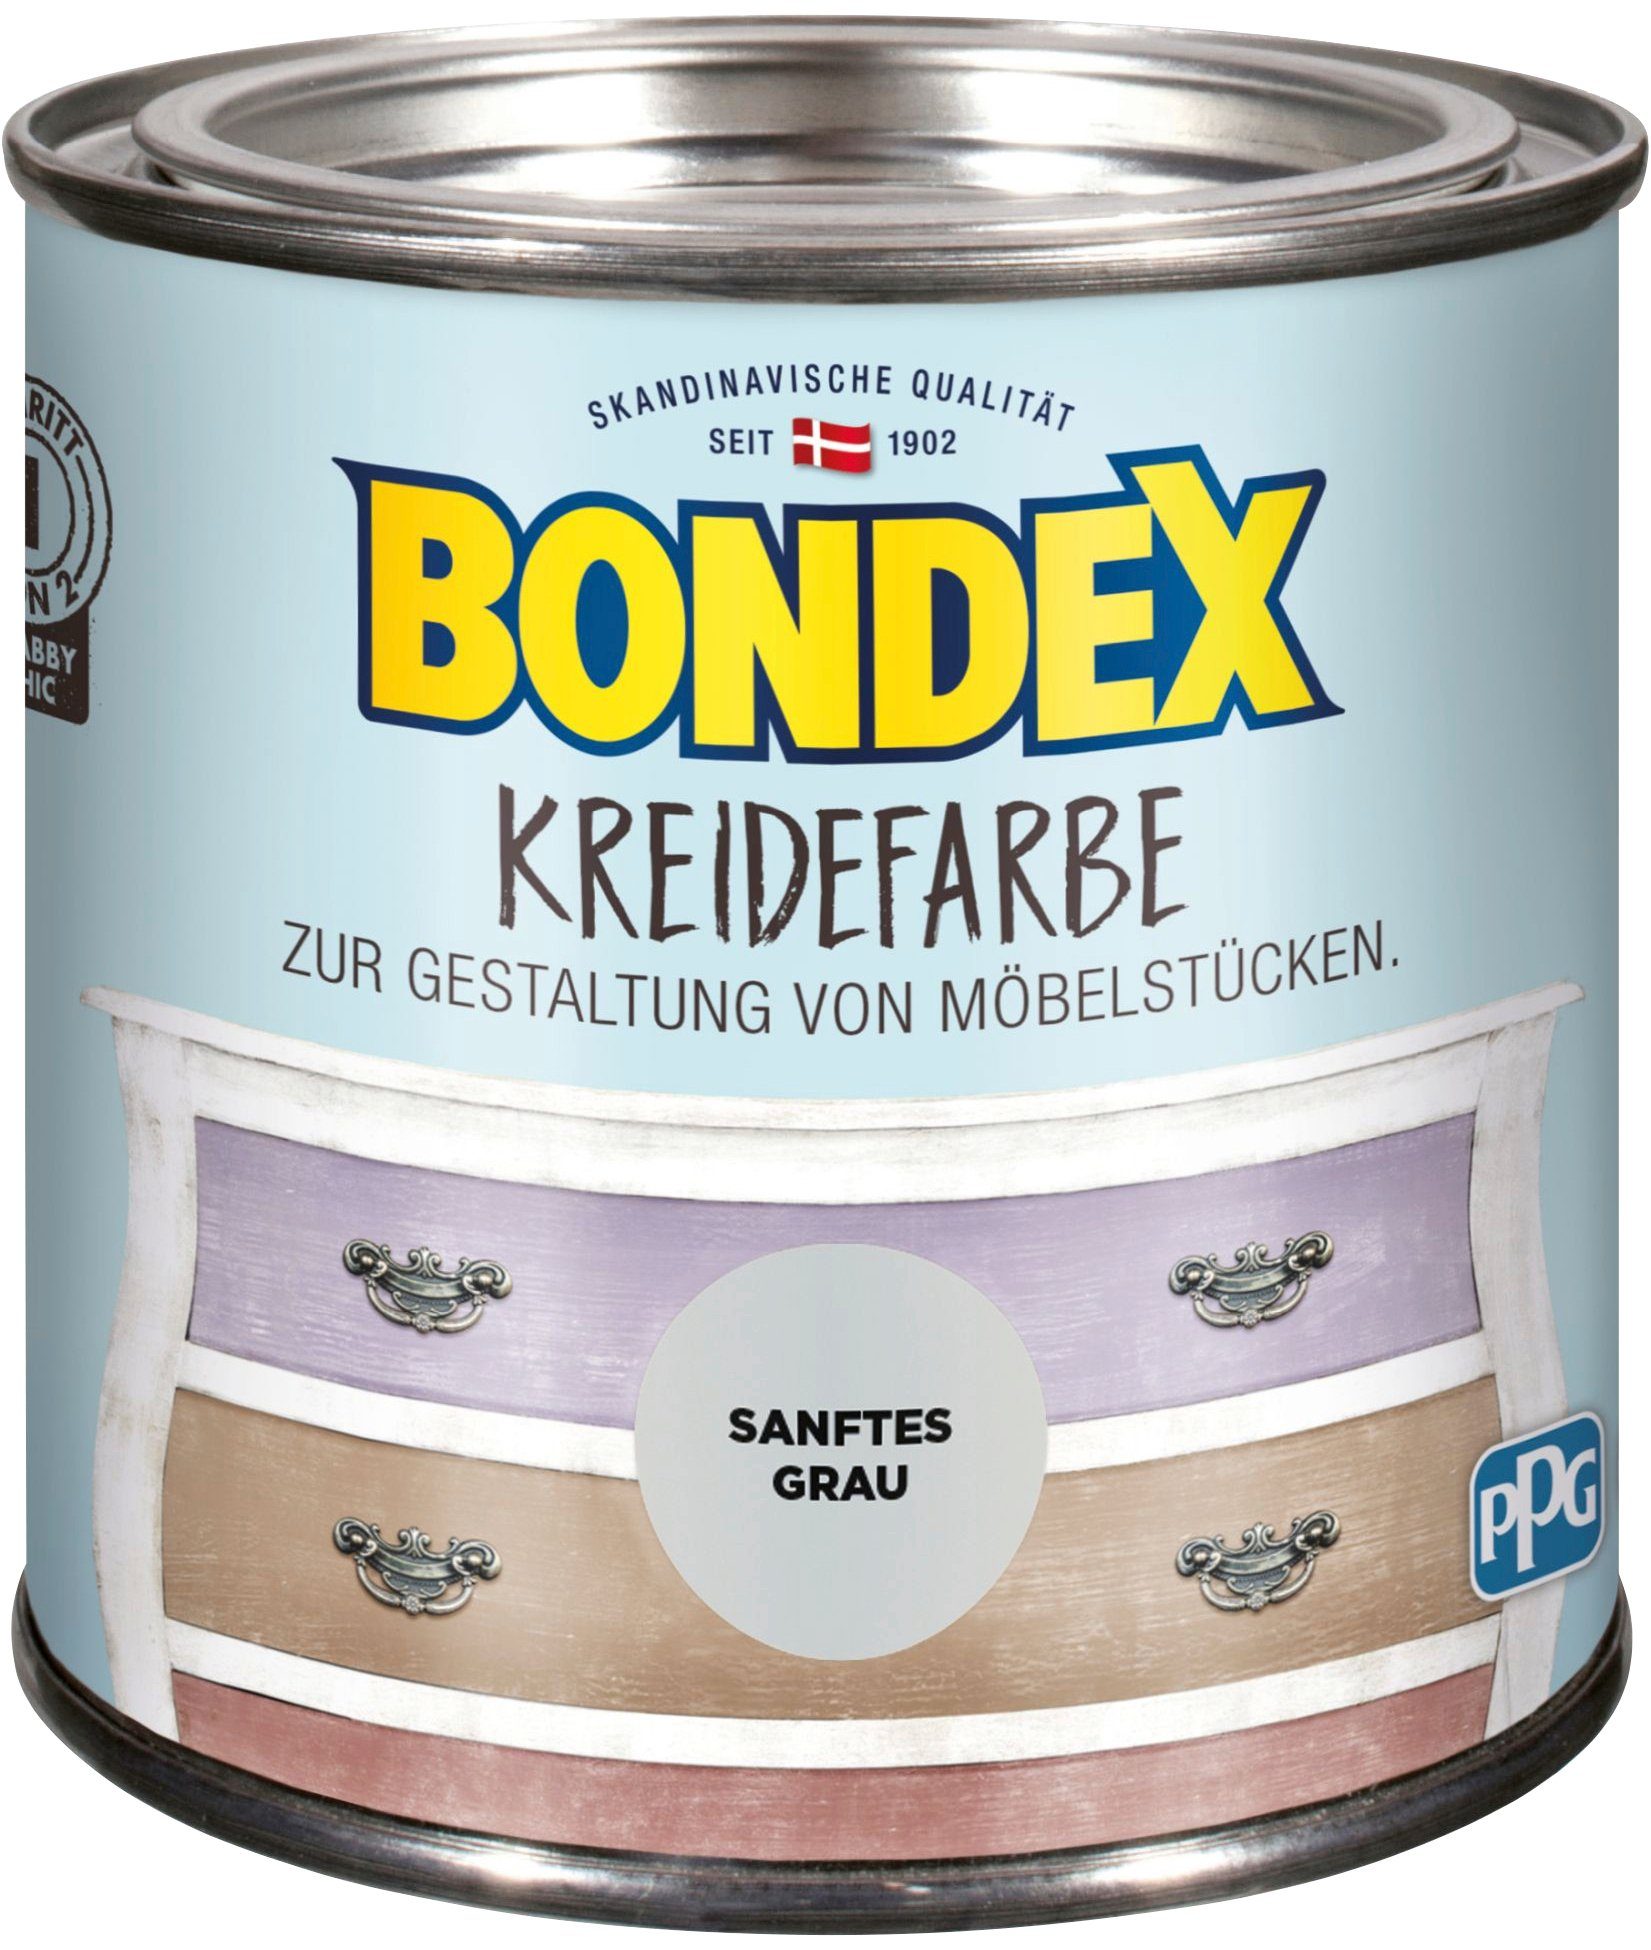 Bondex Kreidefarbe KREIDEFARBE, von Möbelstücken, Sanftes 0,5 l zur Gestaltung Grau